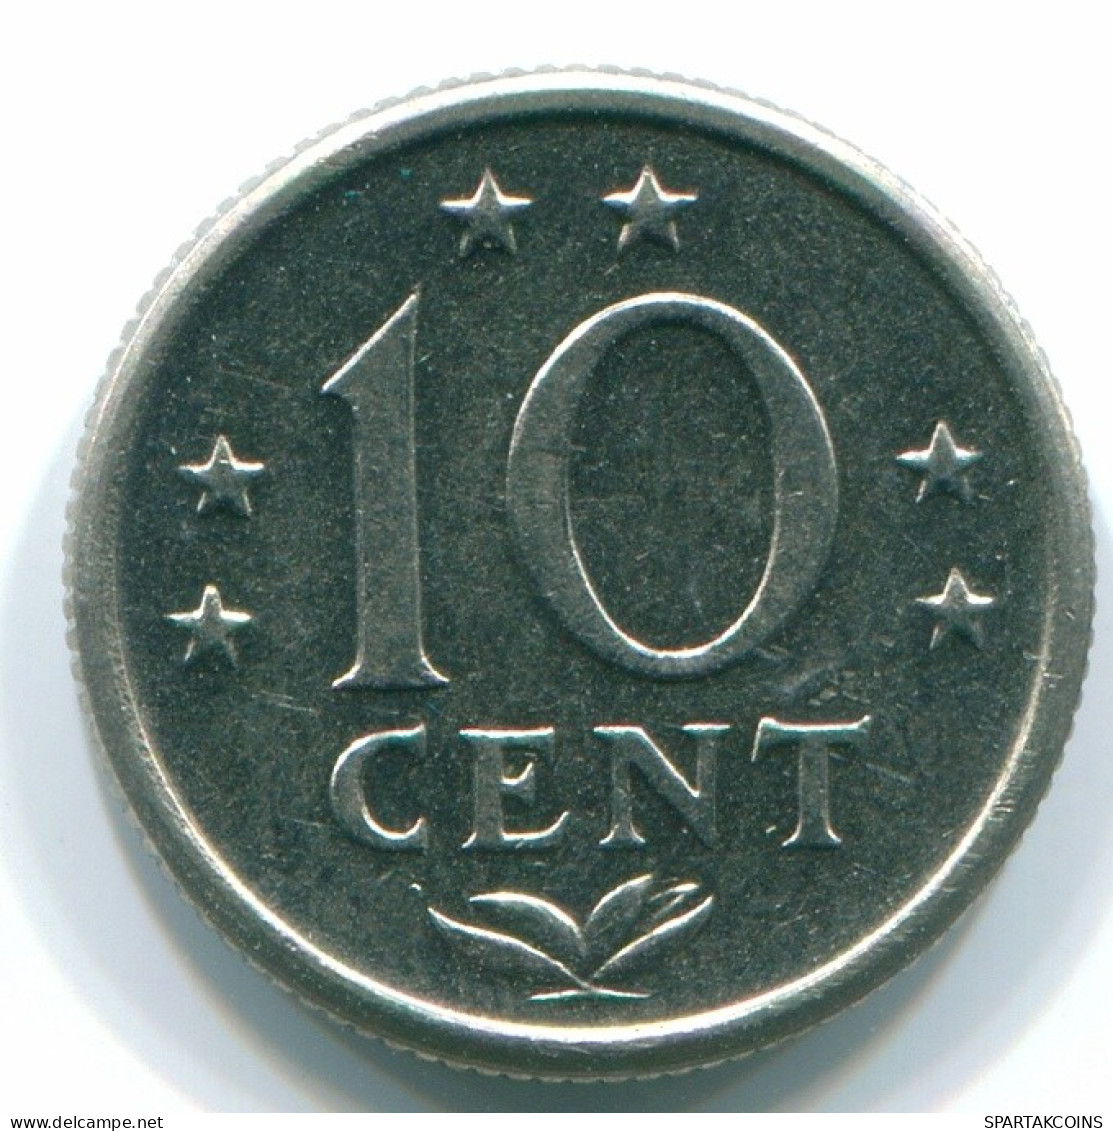 10 CENTS 1974 NIEDERLÄNDISCHE ANTILLEN Nickel Koloniale Münze #S13525.D.A - Niederländische Antillen